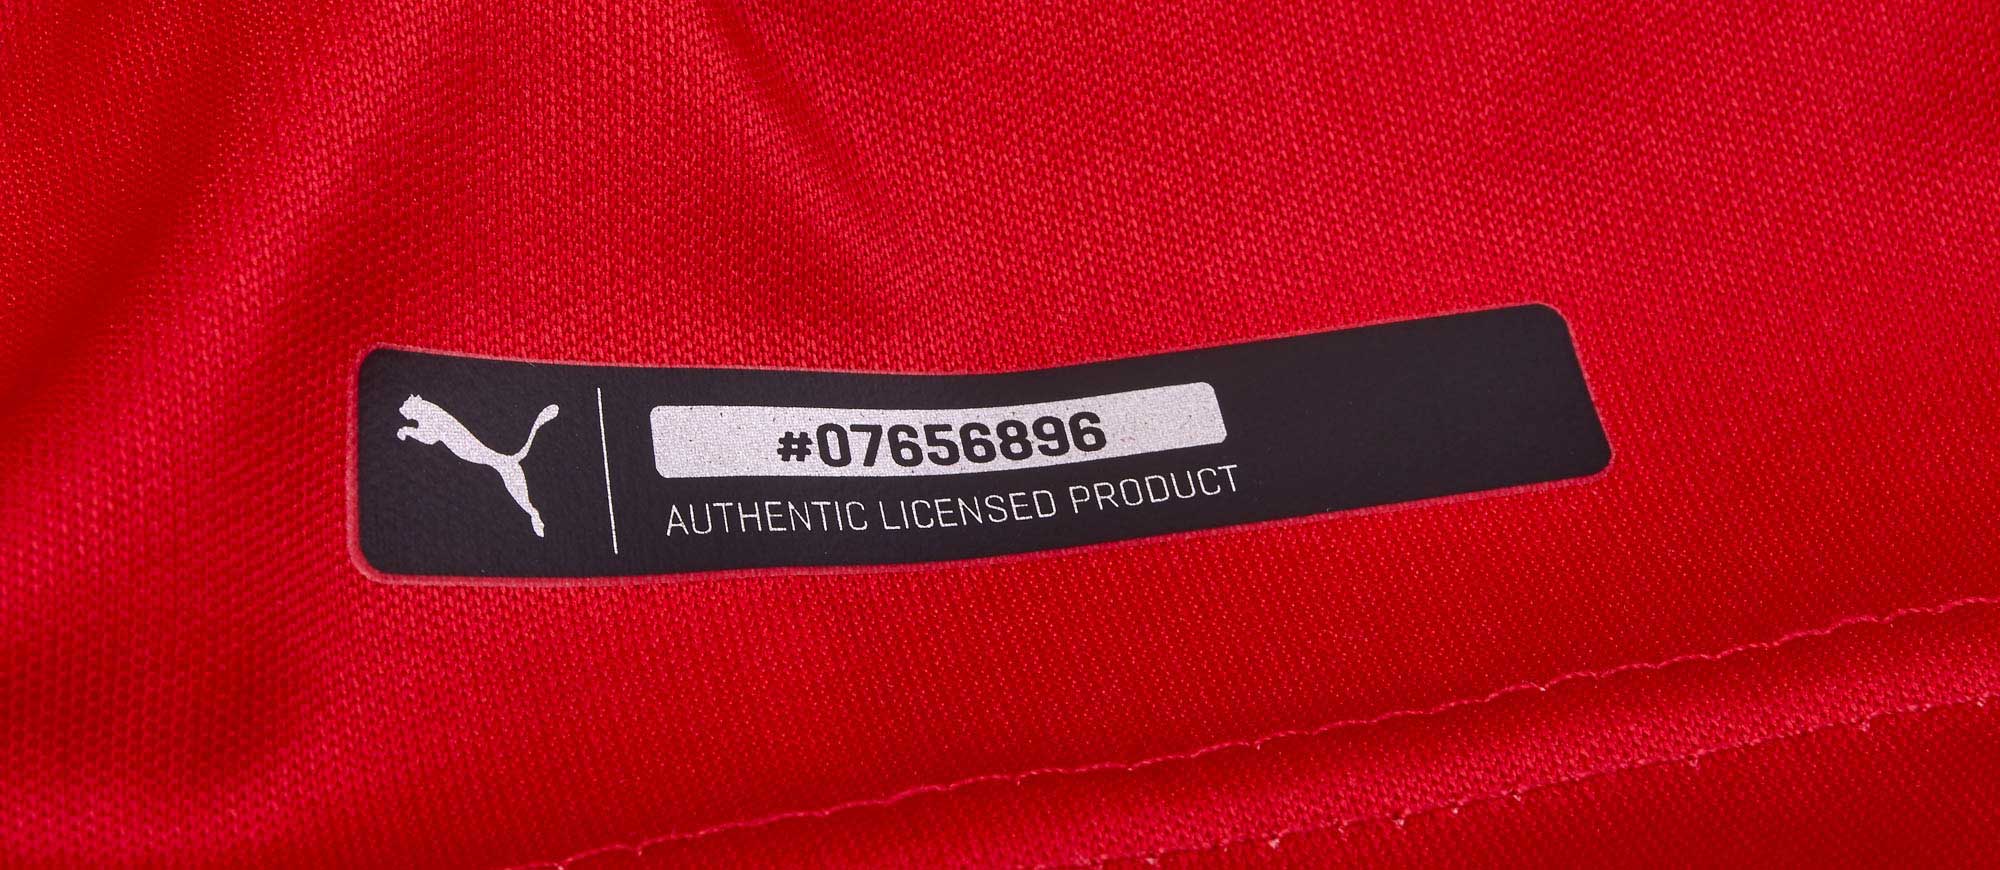 authentic licensed product puma